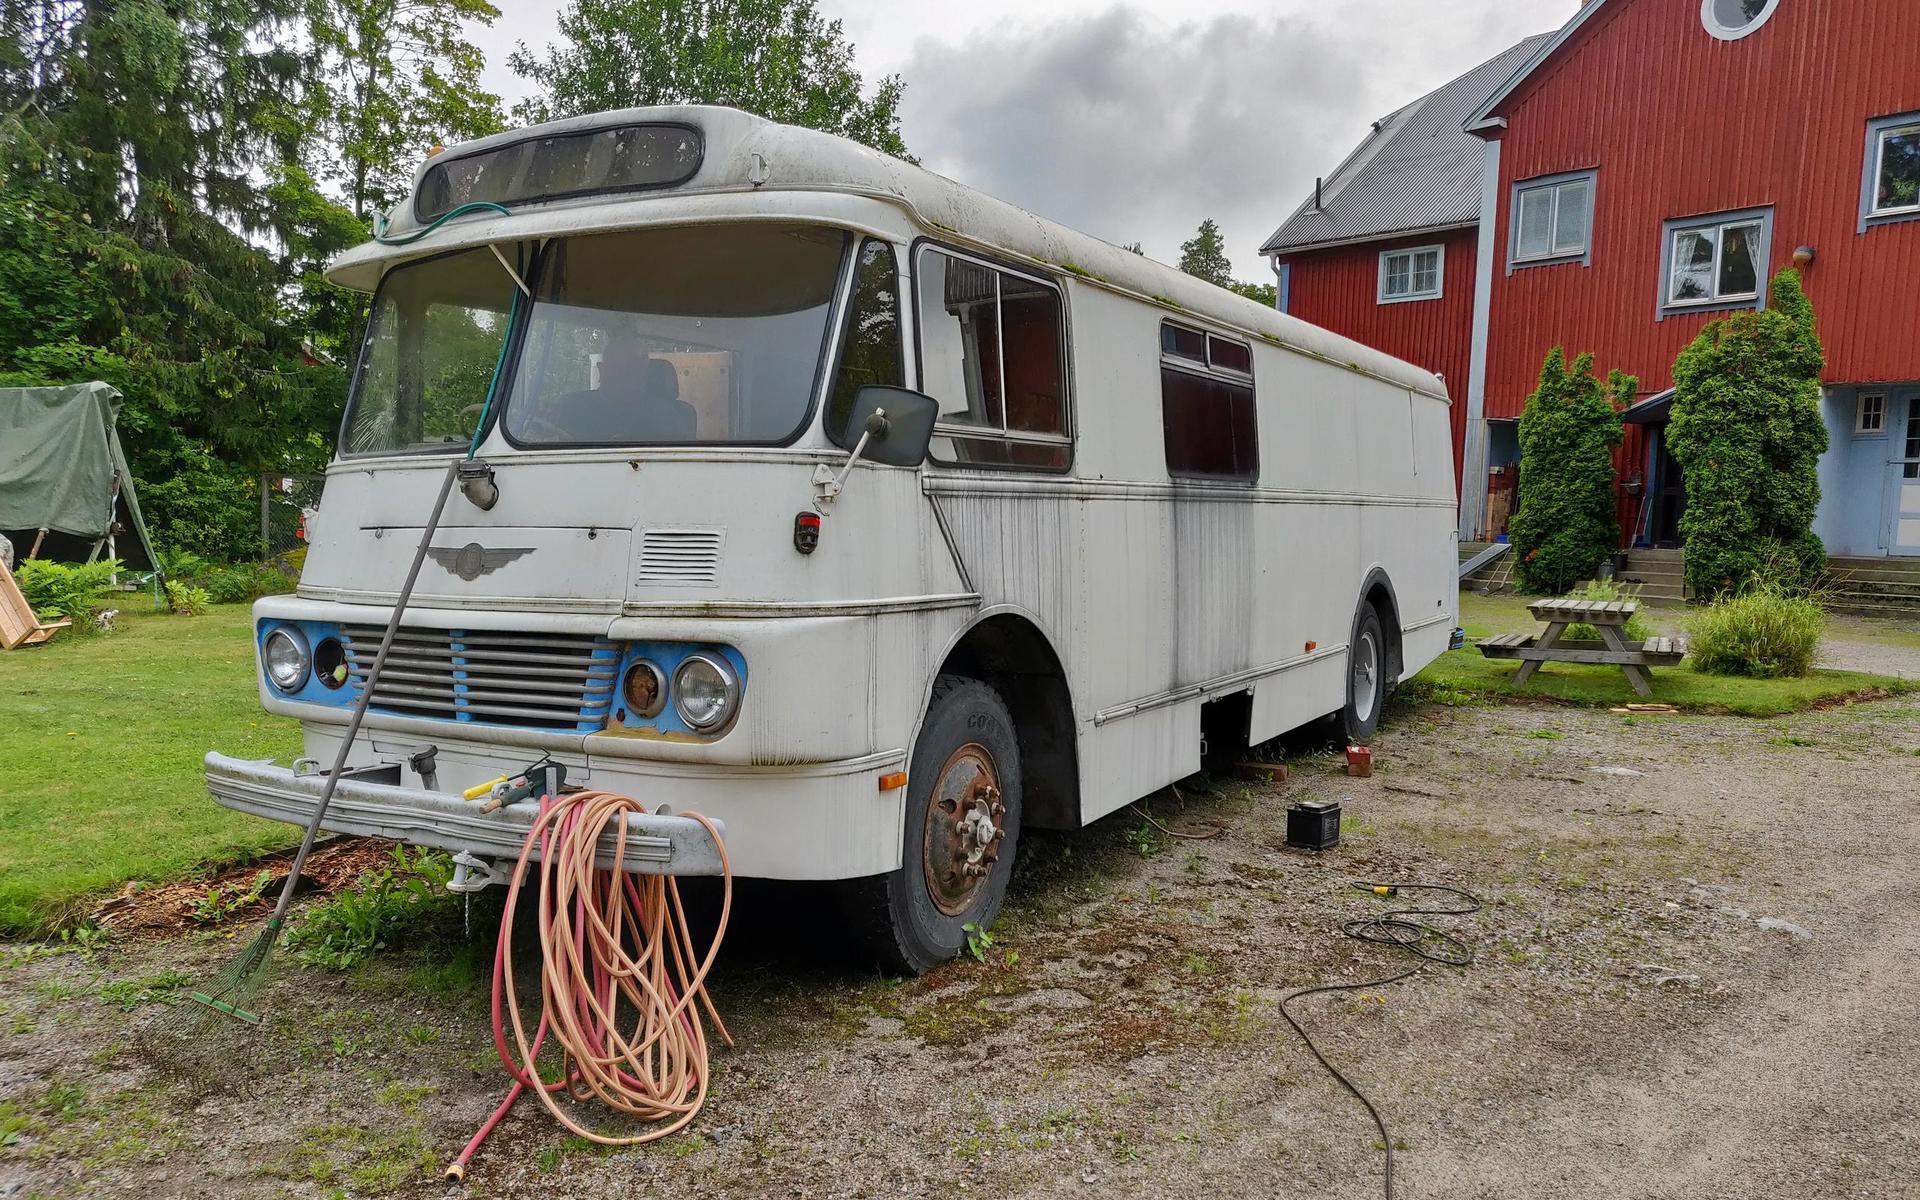 56 år senare har bussen DKJ 105 förlorat all sin glans. Men Bertil hade ändå väldigt gärna tagit den med sig hem. Men kostnaden för frakten från Ljusne till Halmstad blev för hög.